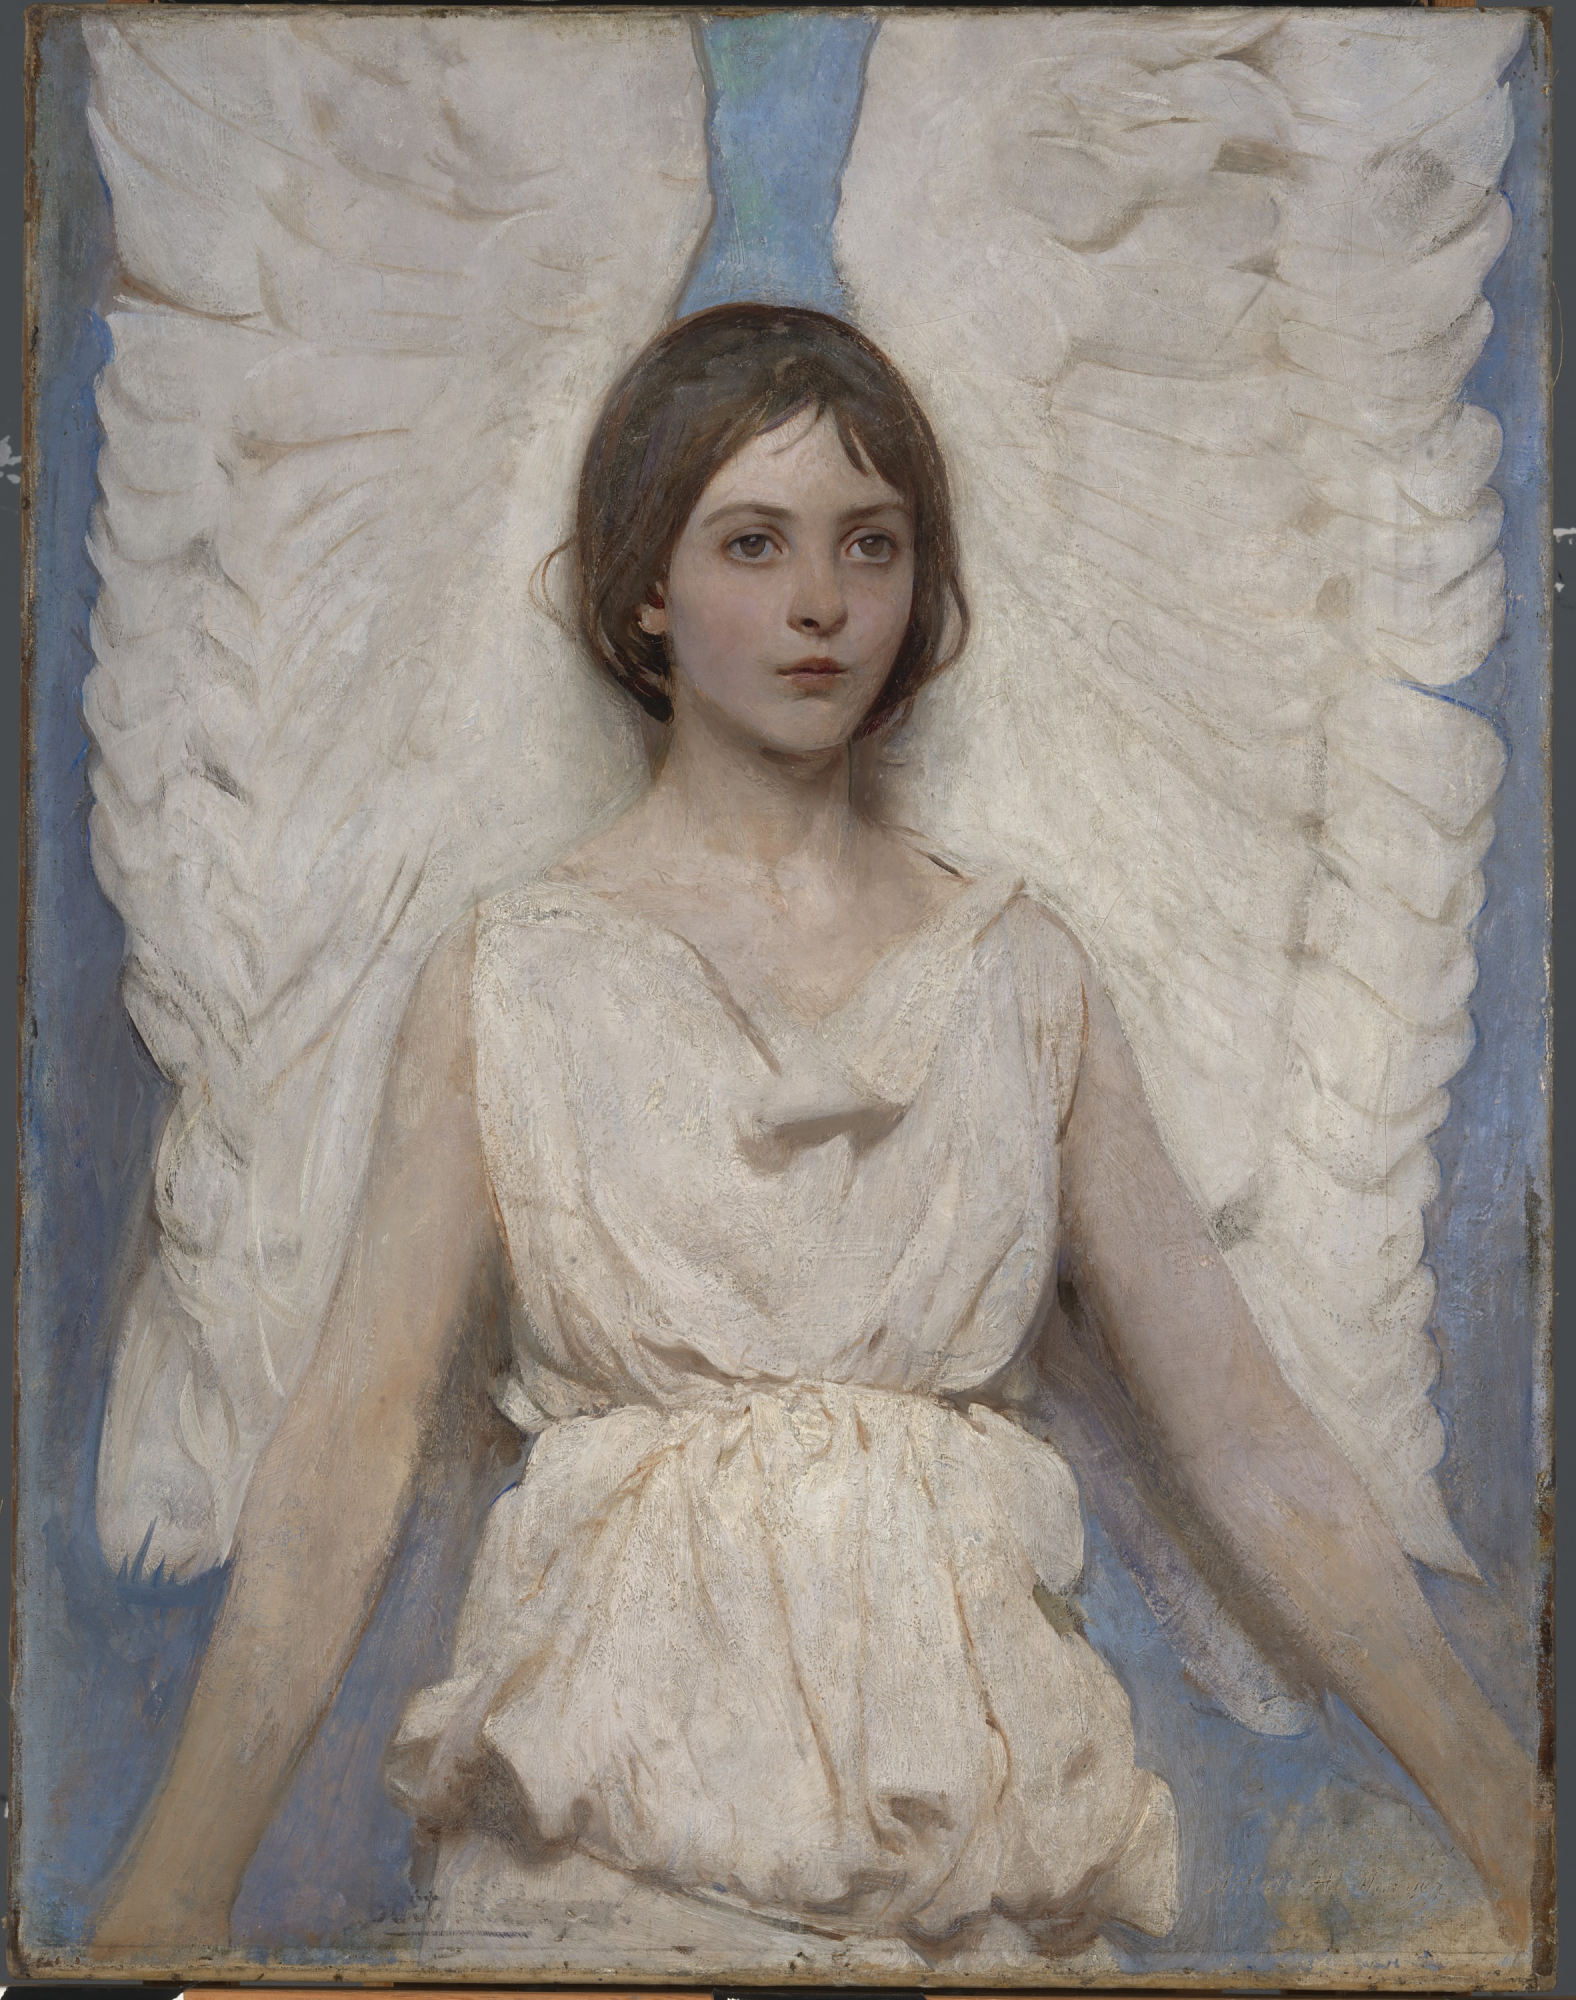 천사 by Abbott Handerson Thayer - 1887 - 92.0 x 71.5 cm 